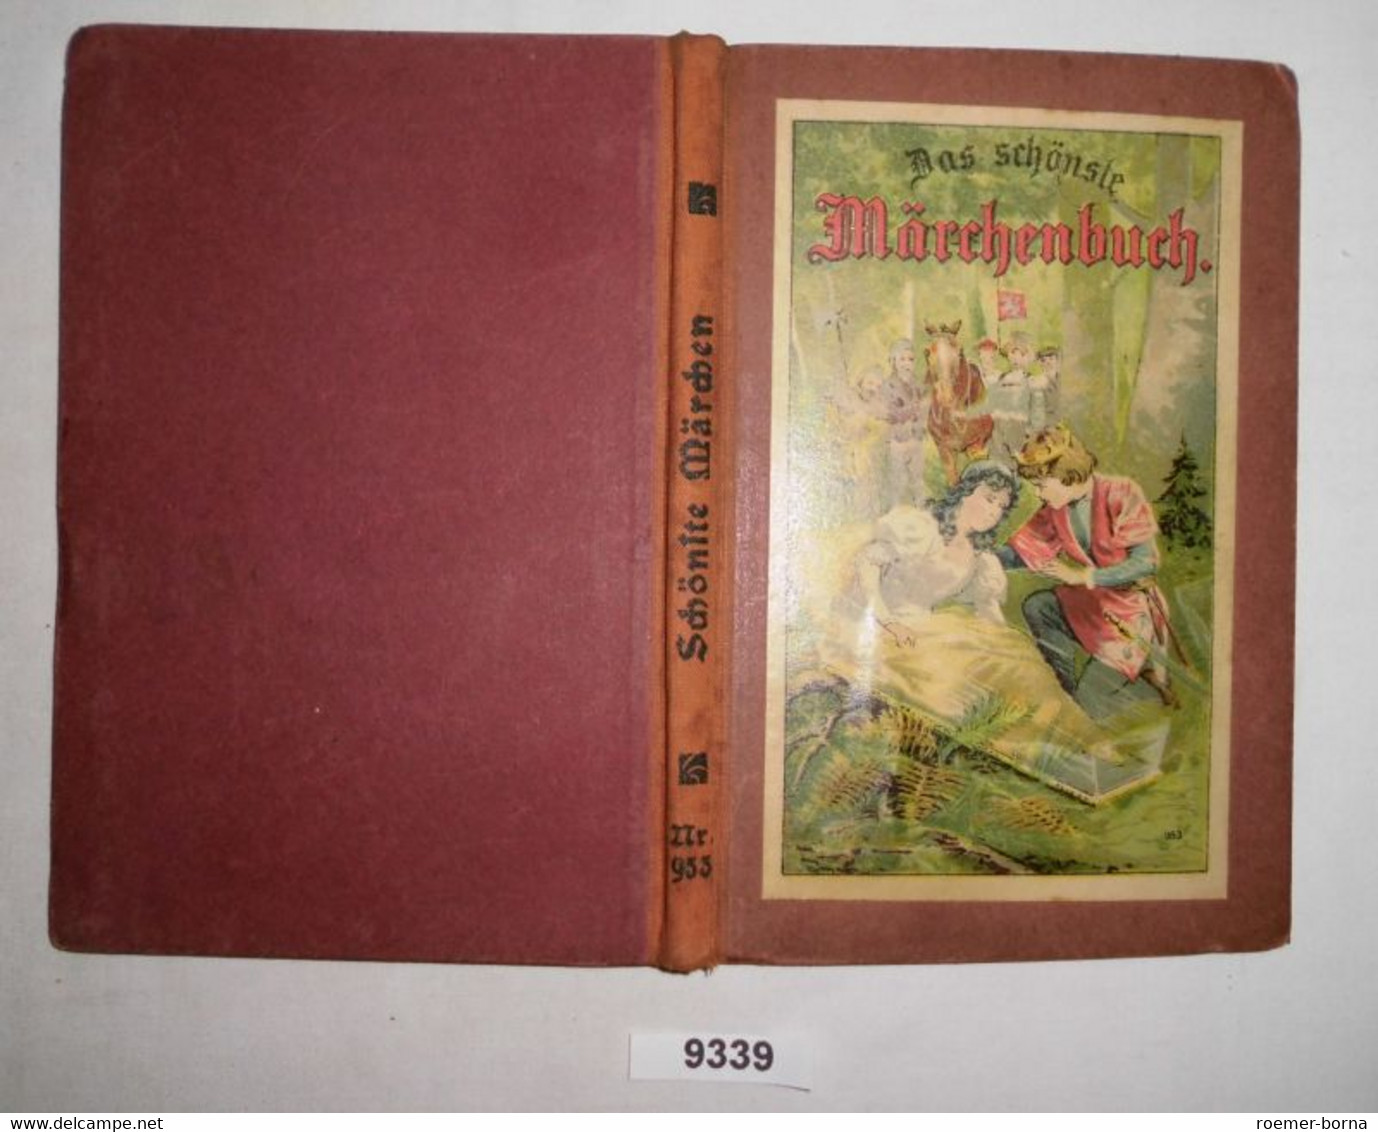 Das Schönste Märchenbuch Für Kinder - Cuentos